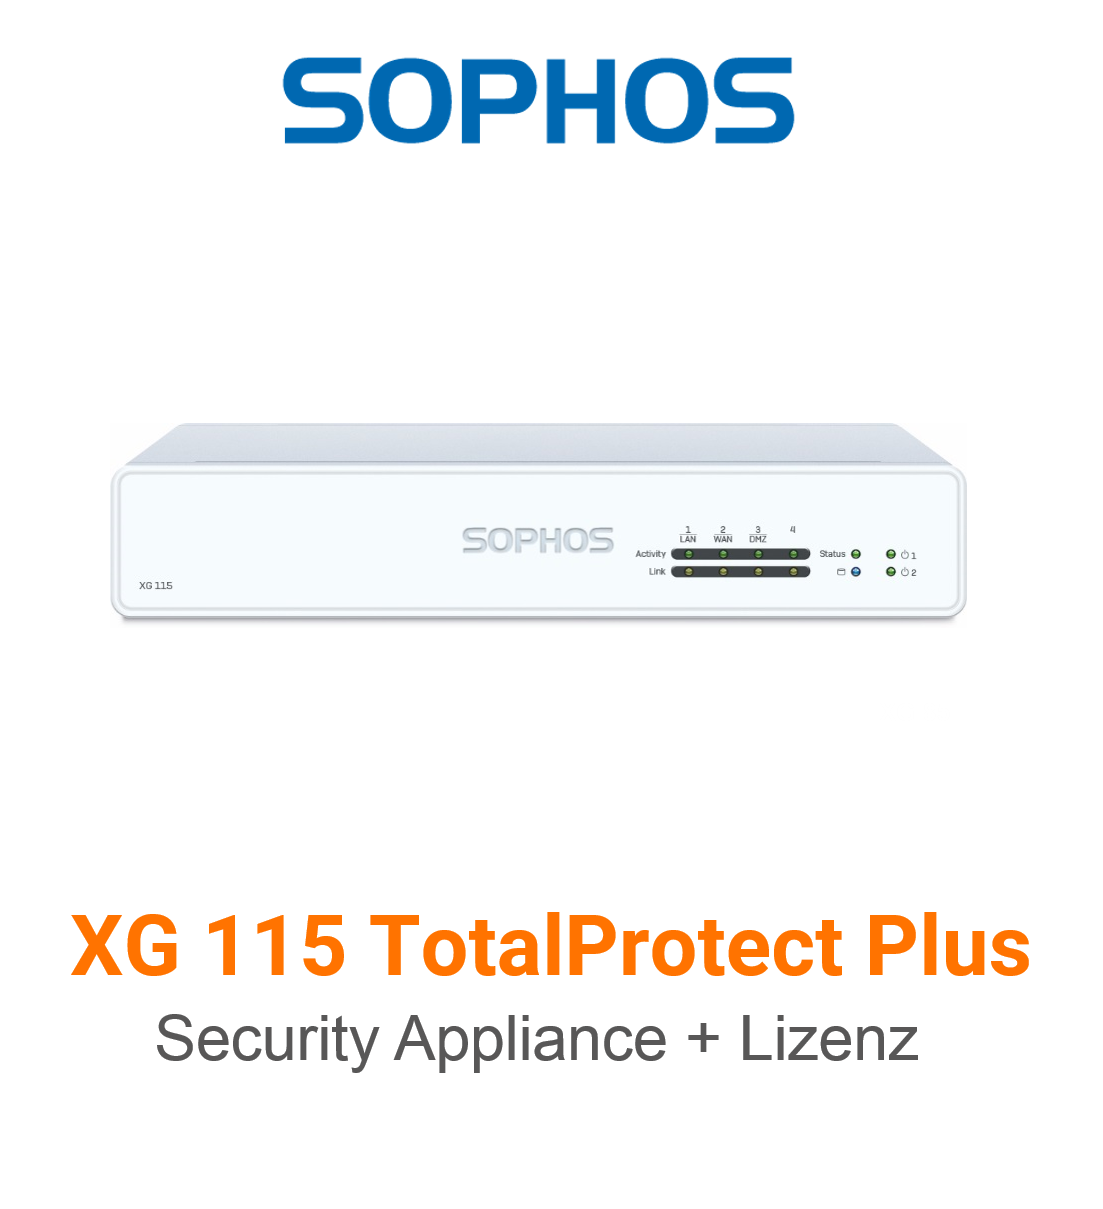 Sophos XG 115 TotalProtect Plus Bundle (Hardware + Lizenz)